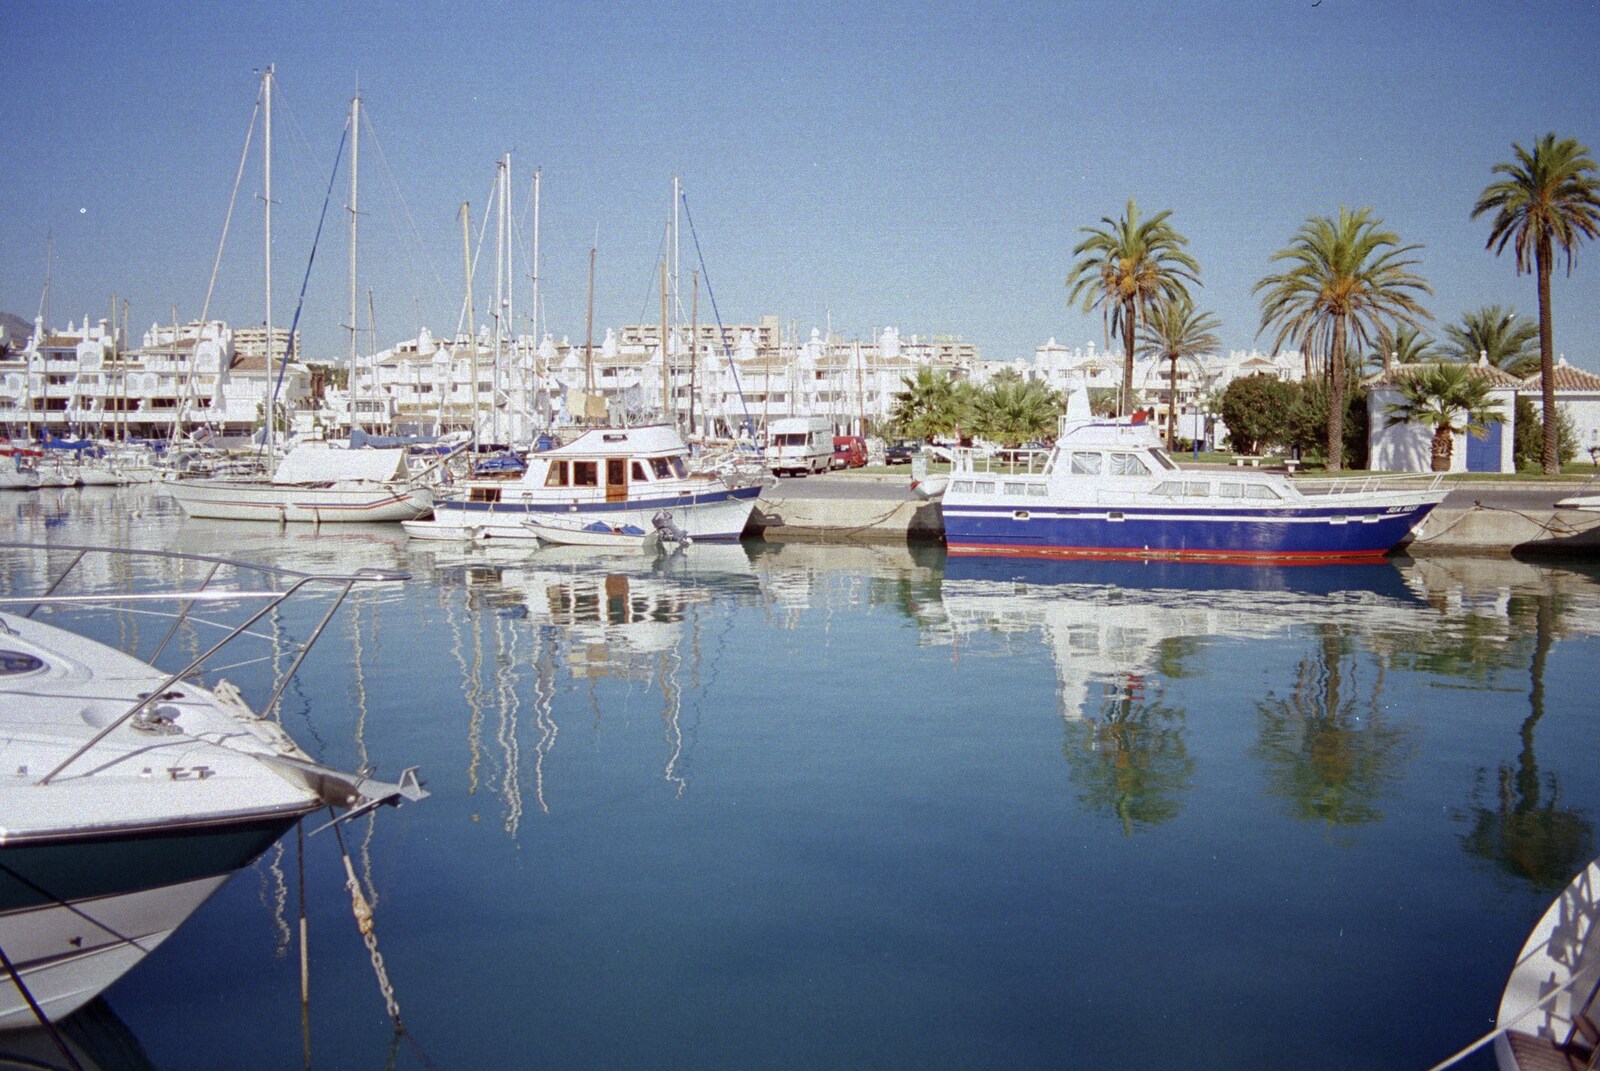 Boats in the marina at Benalmádena from The CISU Massive do Malaga, Spain - November 14th 1998